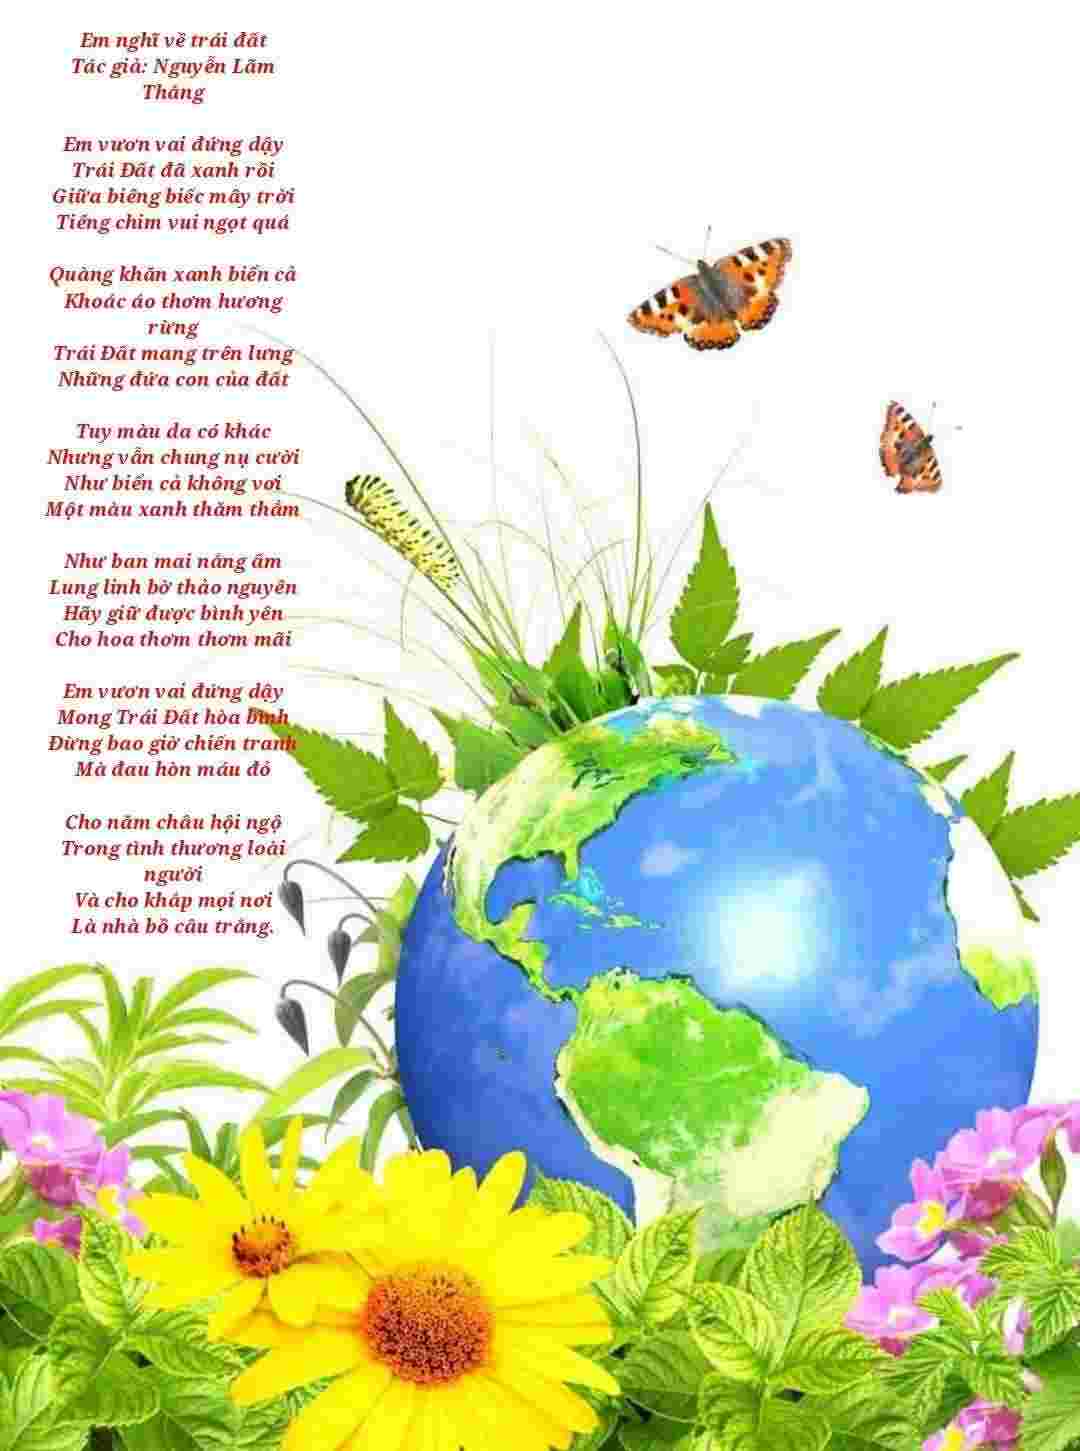 Lời thơ hay em nghĩ về trái đất